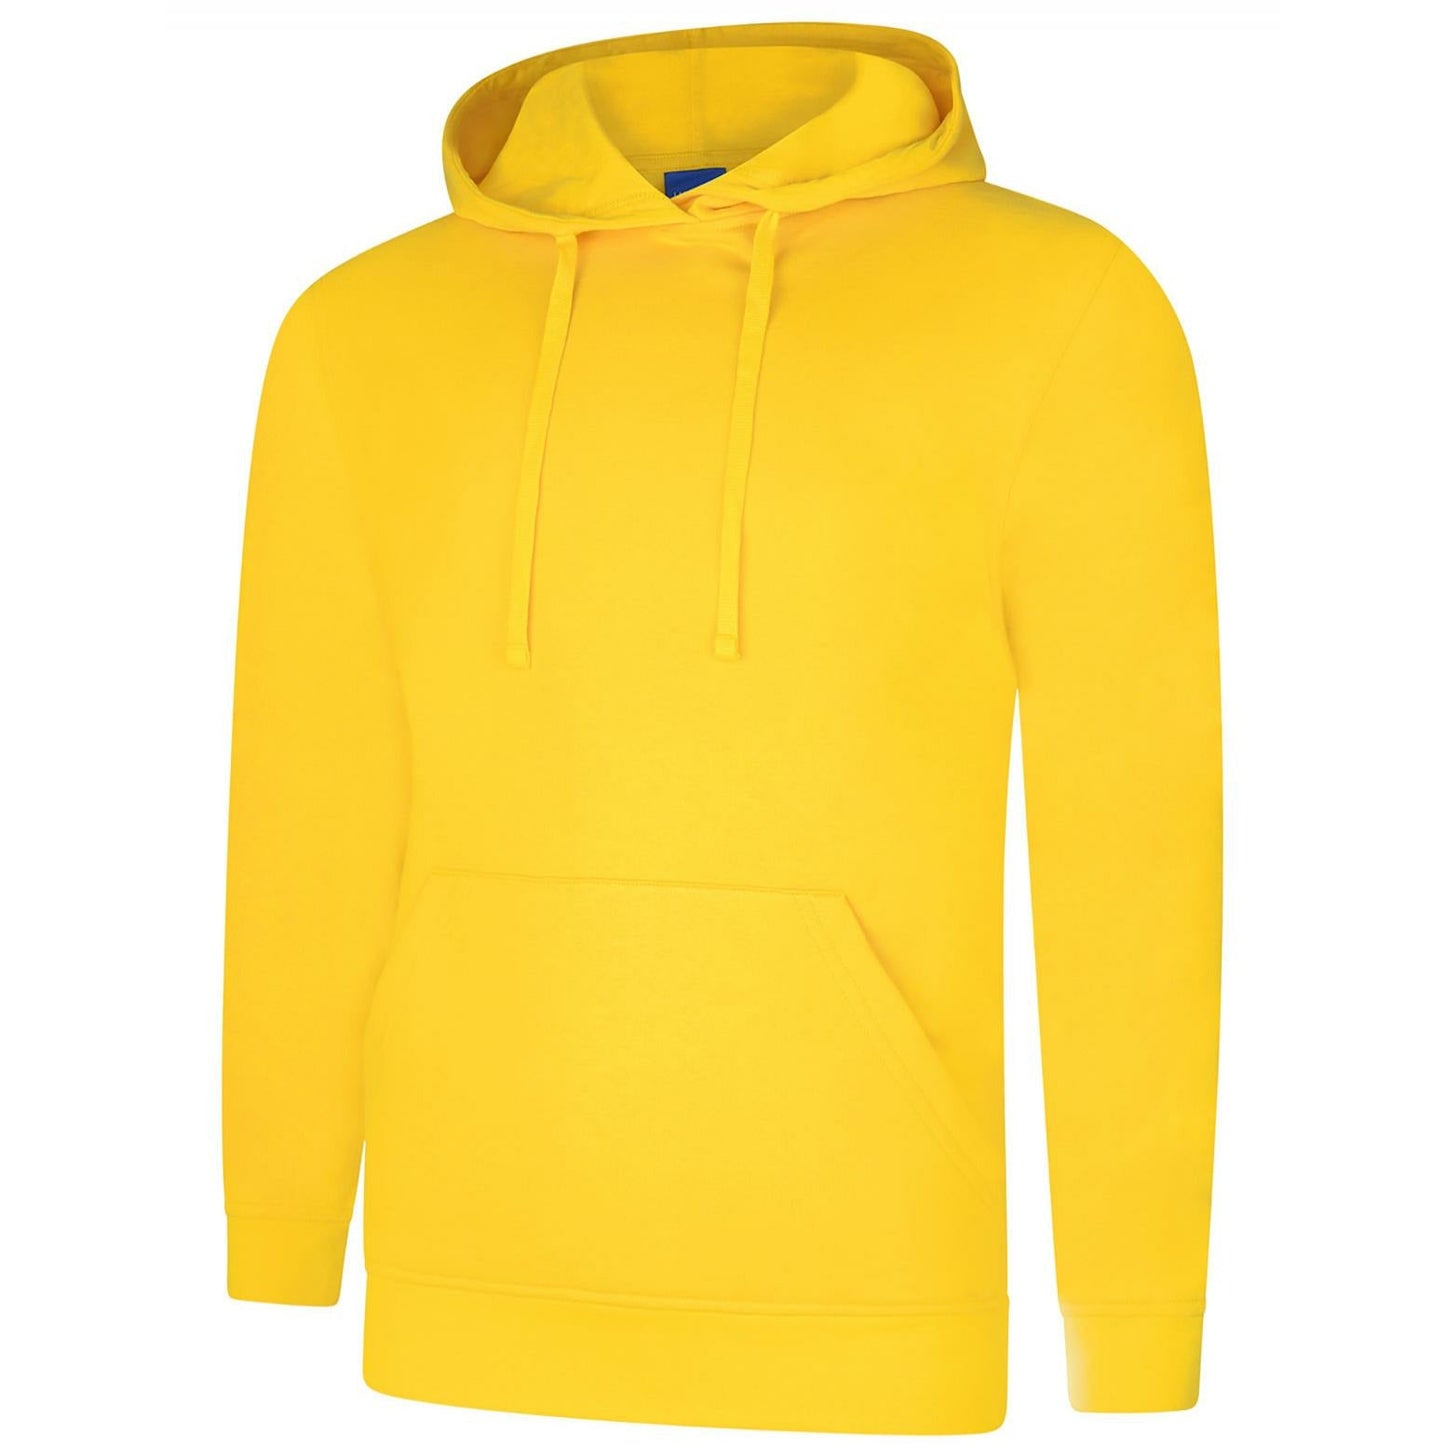 Deluxe Hooded Sweatshirt (XS - M) Yellow